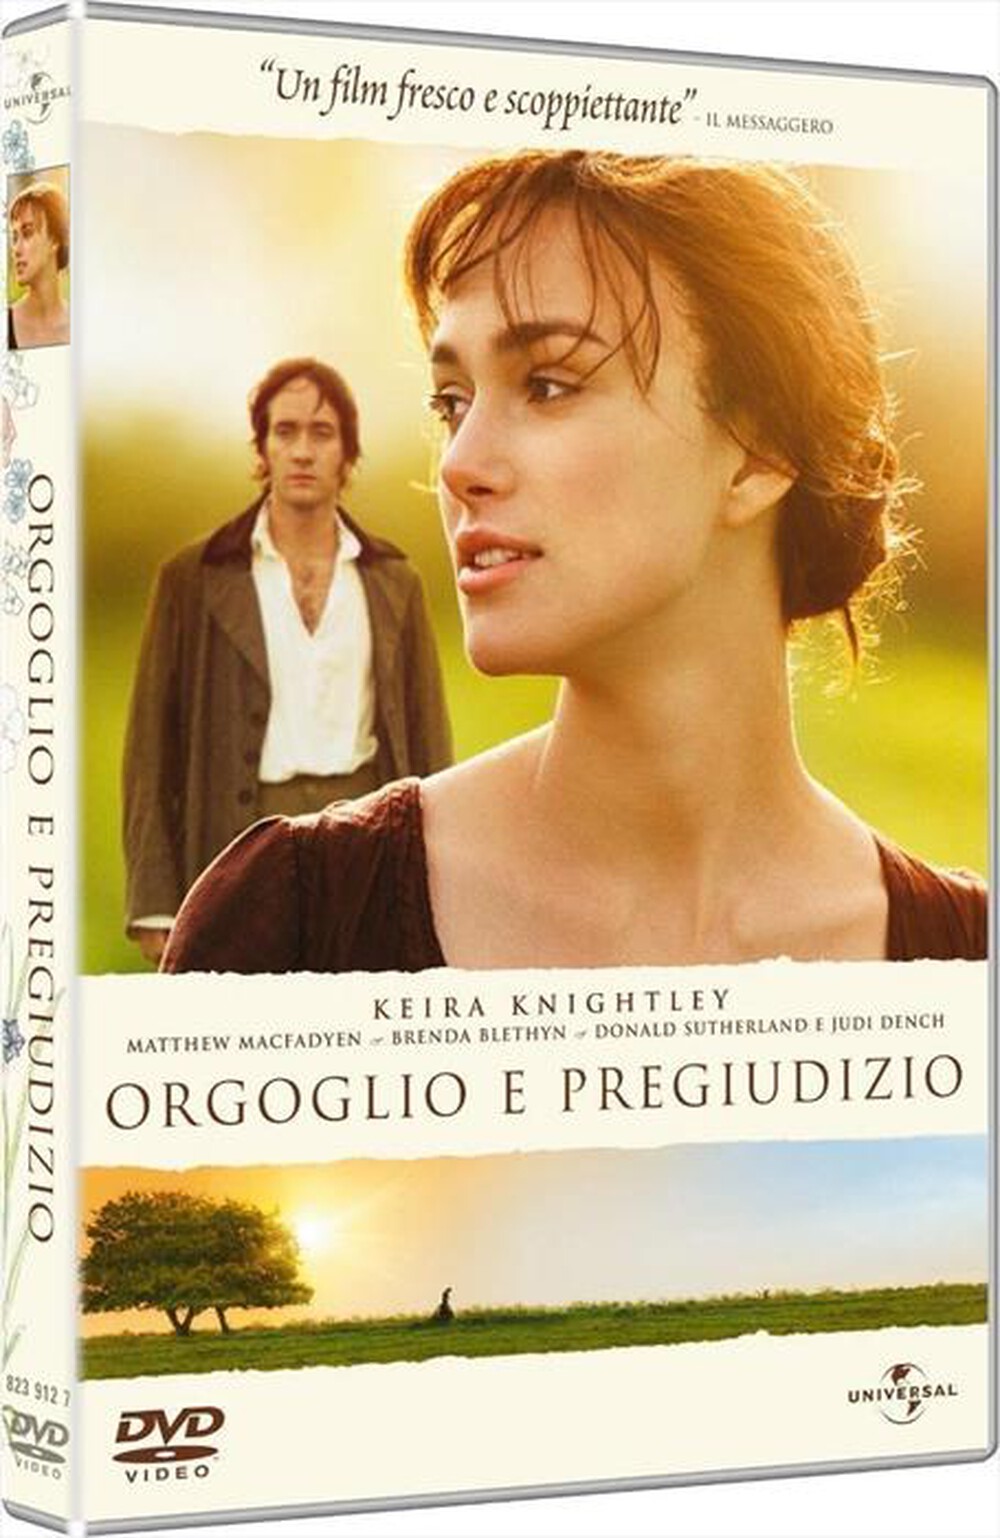 "WARNER HOME VIDEO - Orgoglio E Pregiudizio (2005)"